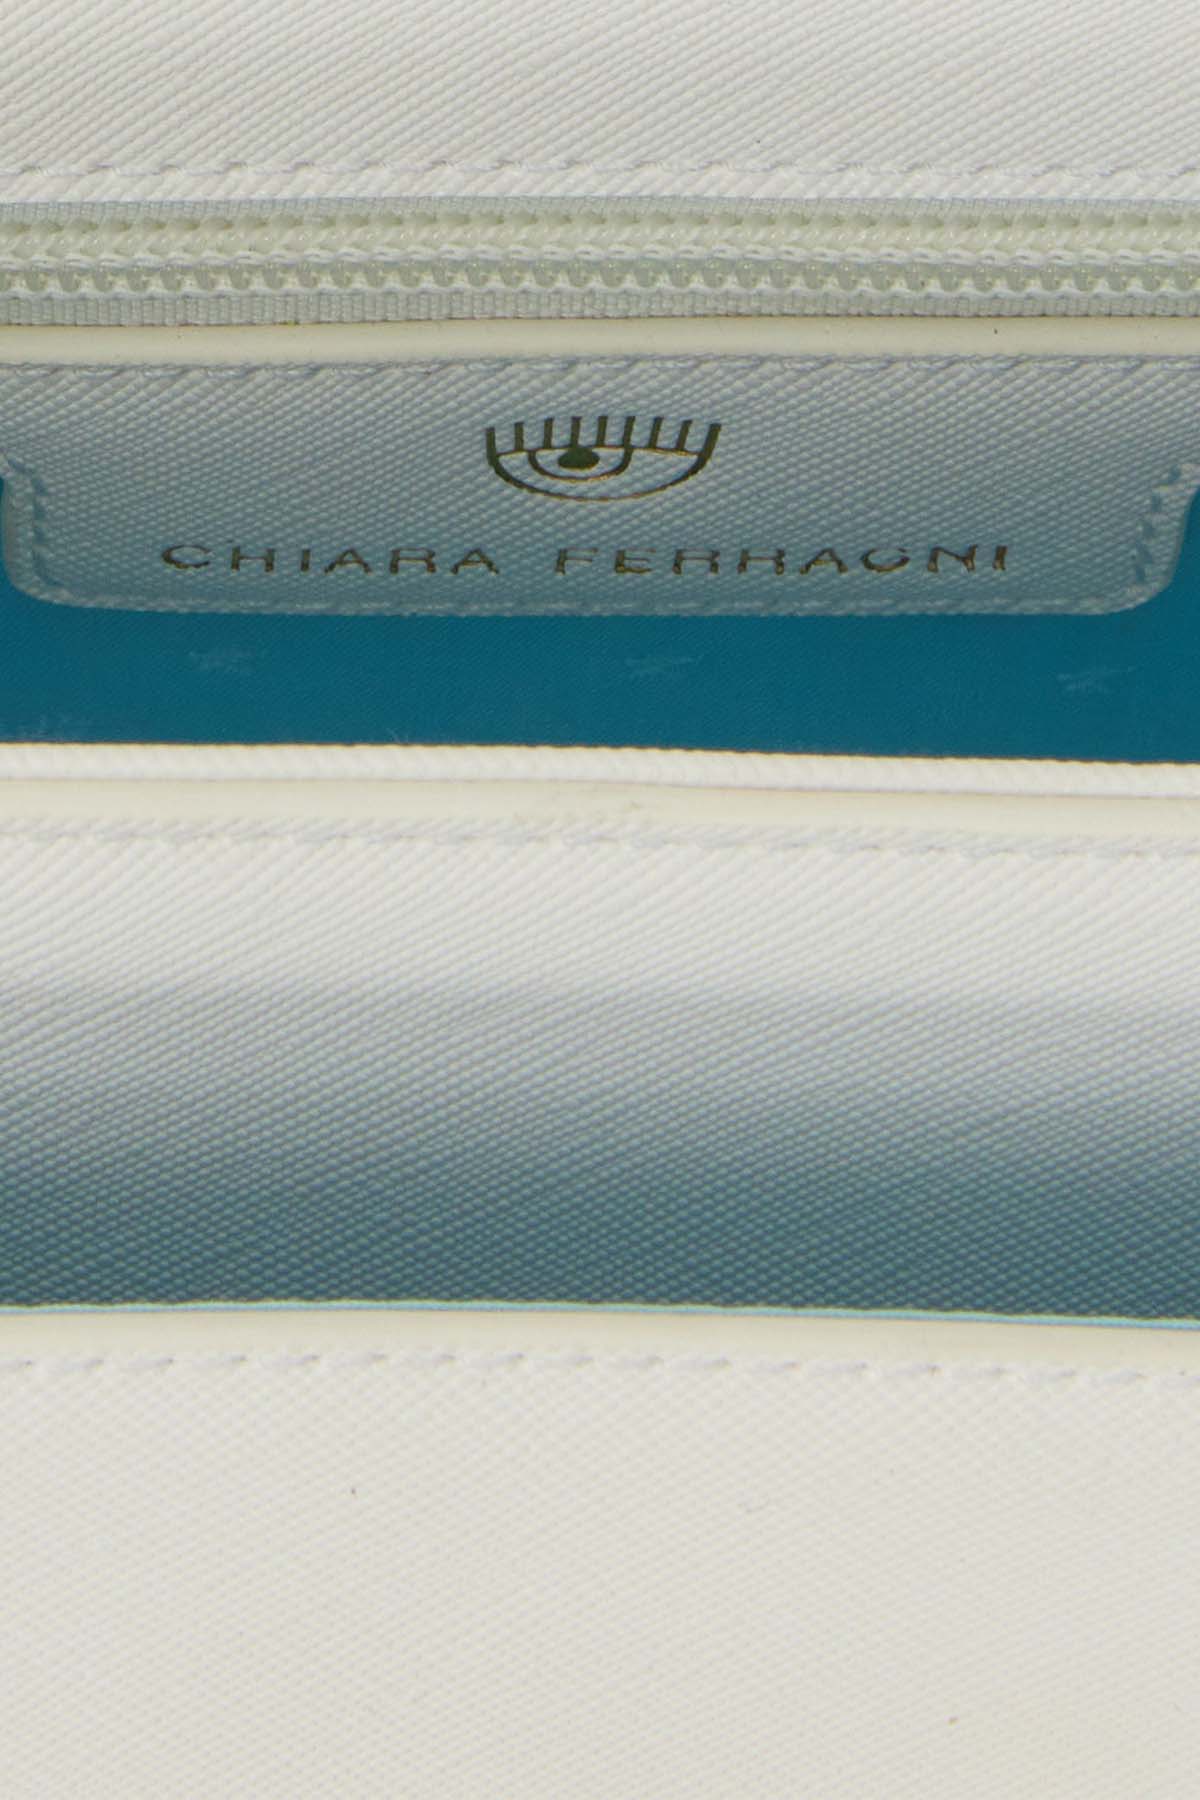 Chiara Ferragni Göz Logolu Omuz Çantası